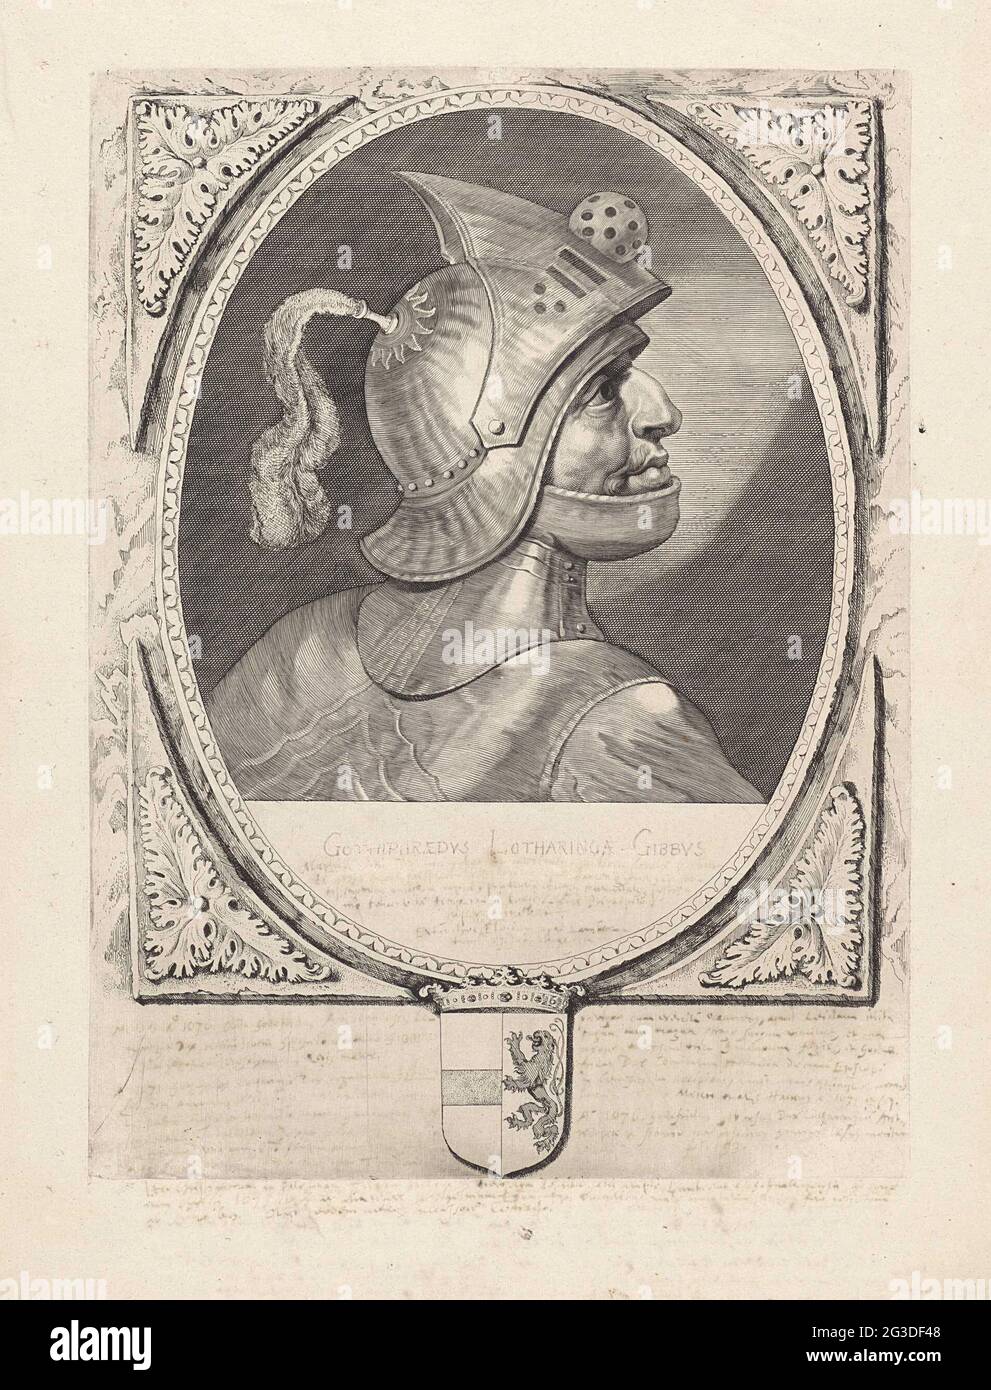 Porträt von Godfried III mit der Beule. Godfried III. Mit der Beule, Herzog von Niederlothringen. Er trägt einen Helm und wird im Profil angezeigt. Der Rahmen ist mit der Waffe Hollands verziert. Stockfoto